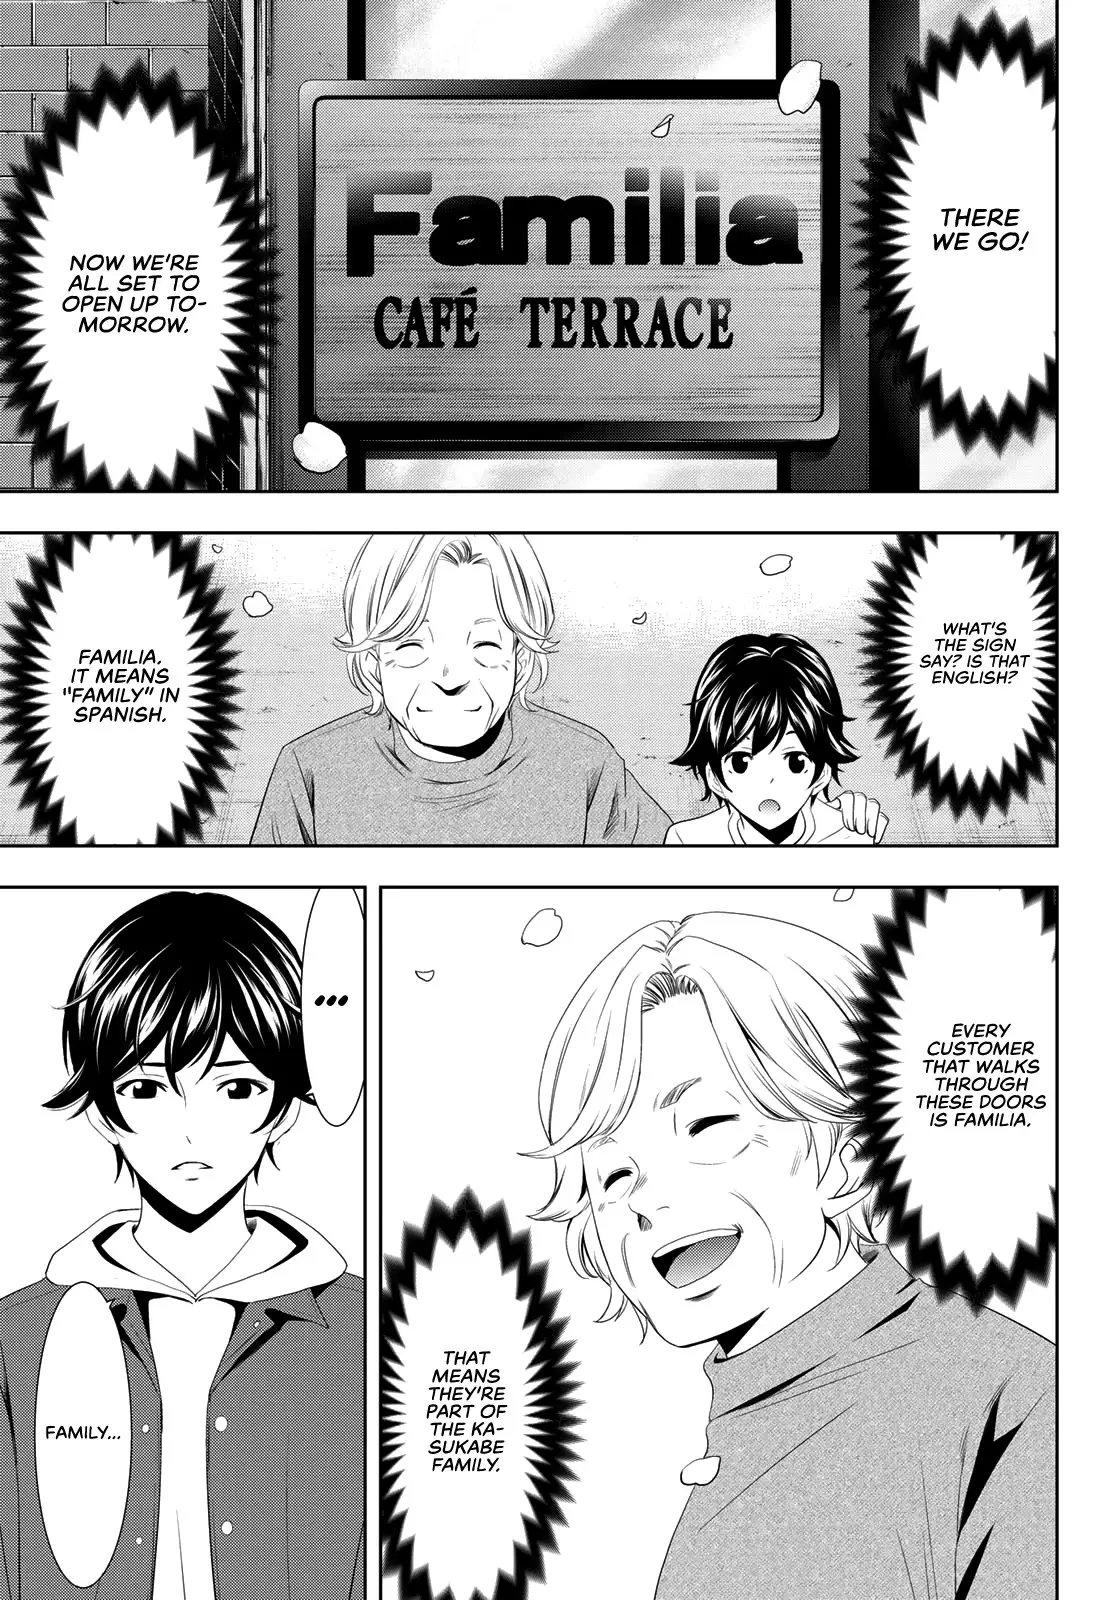 Goddess Café Terrace - 1 page 72